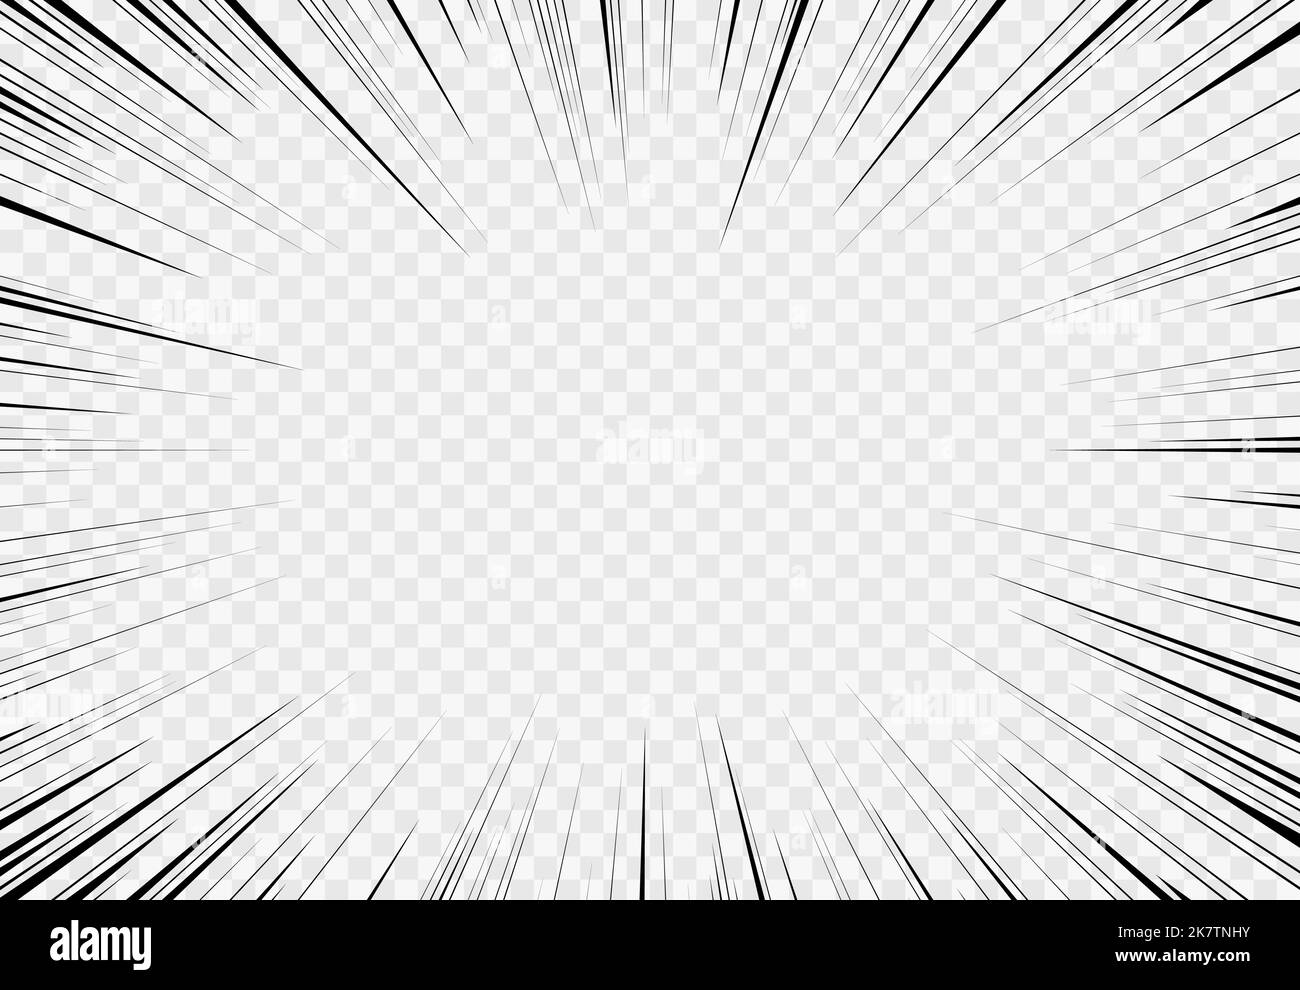 Fond transparent Manga, explosion comique, mouvement. Bordure monochrome abstraite avec rayons radiaux. Vecteur isolé anime BD livre flash lumière vide cadre. Super HERO Burst, des faisceaux lumineux éclatés Illustration de Vecteur